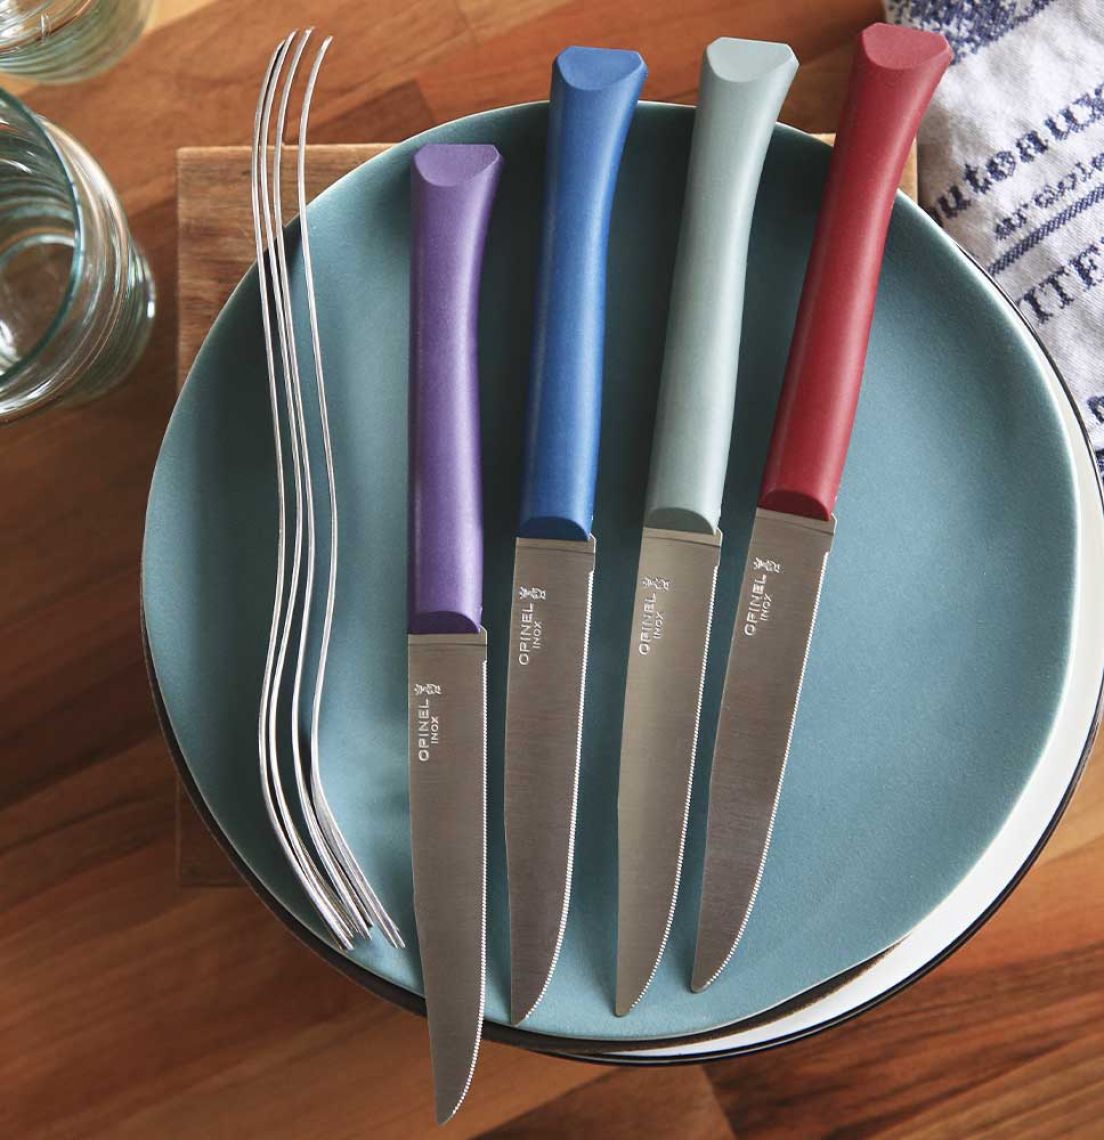 Set de couteaux OPINEL Bon Appétit + Primo 4 couteaux de table